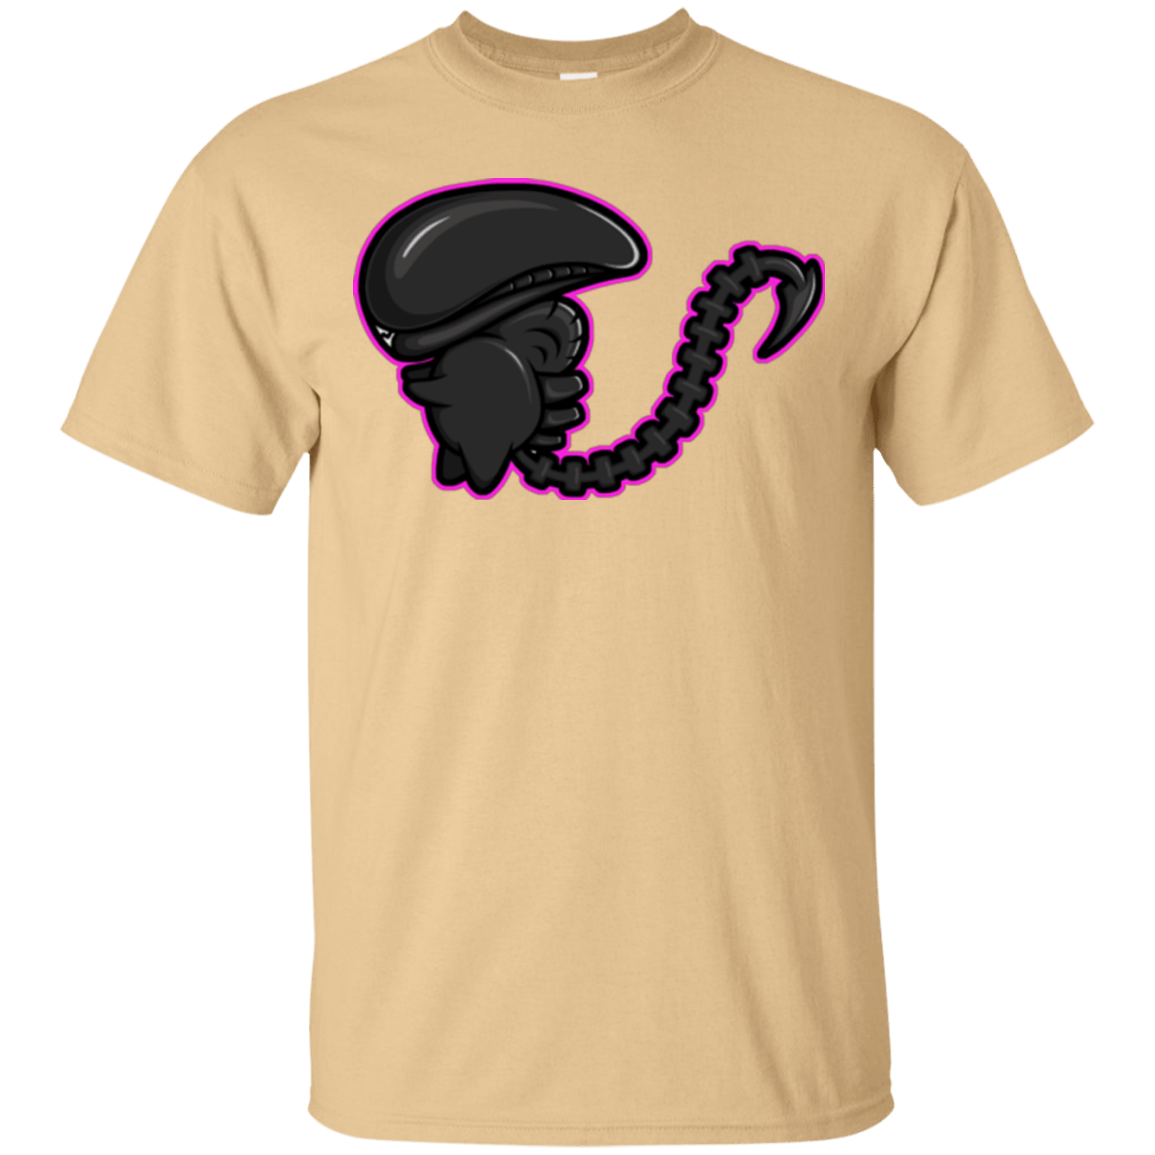 T-Shirts Vegas Gold / Small Super Cute Alien T-Shirt